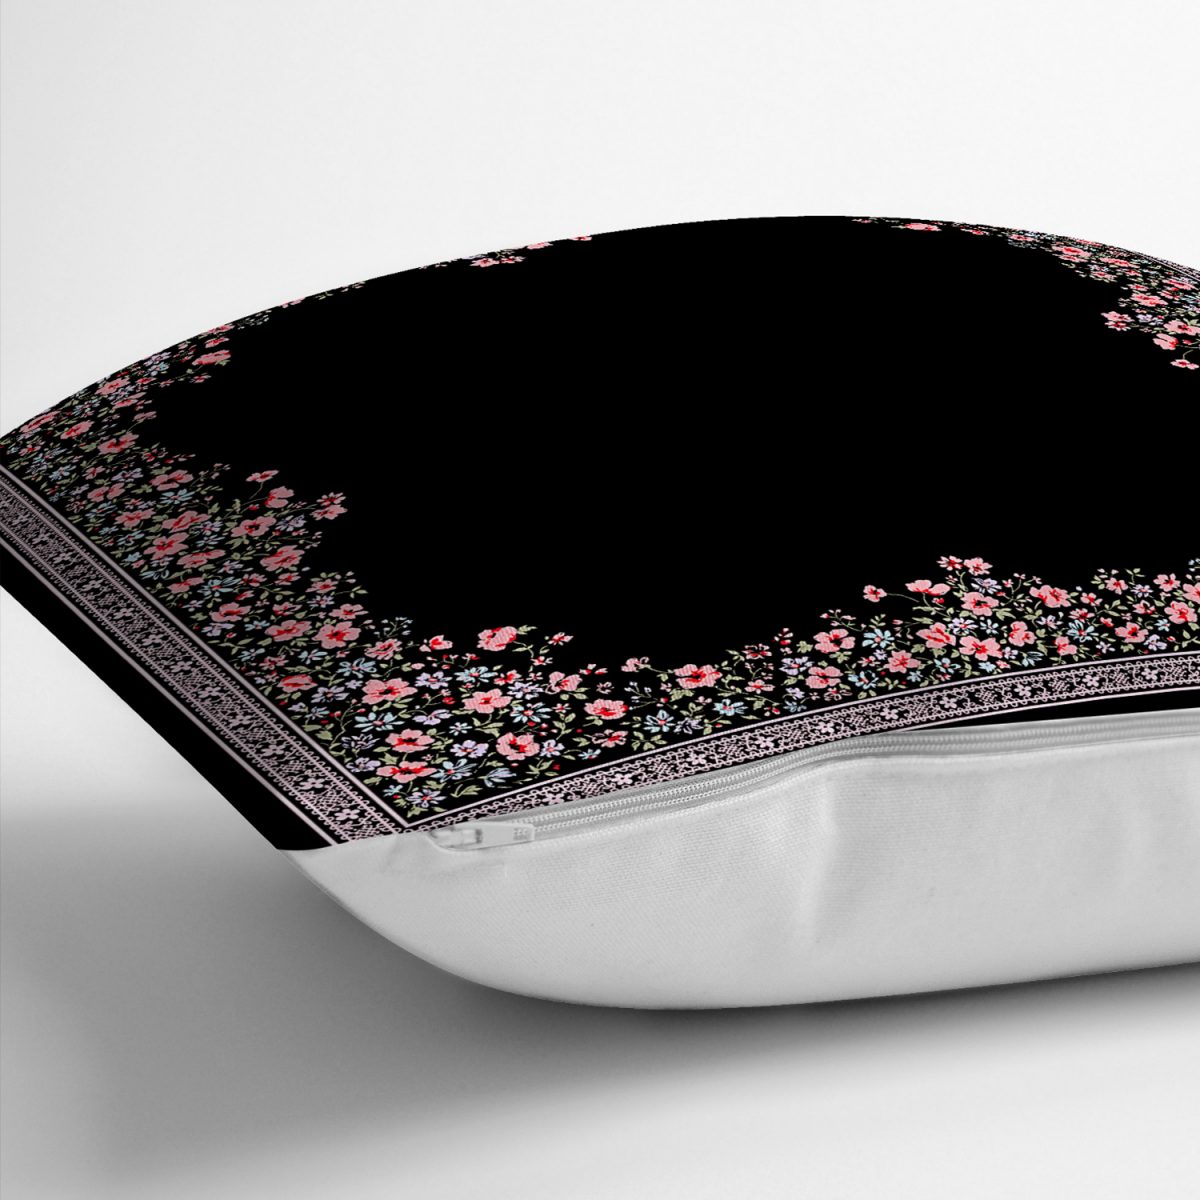 Realhomes Siyah Zeminde Pembe Çiçekler Özel Tasarım Dijital Baskılı Modern Yastık Kırlent Kılıfı Realhomes